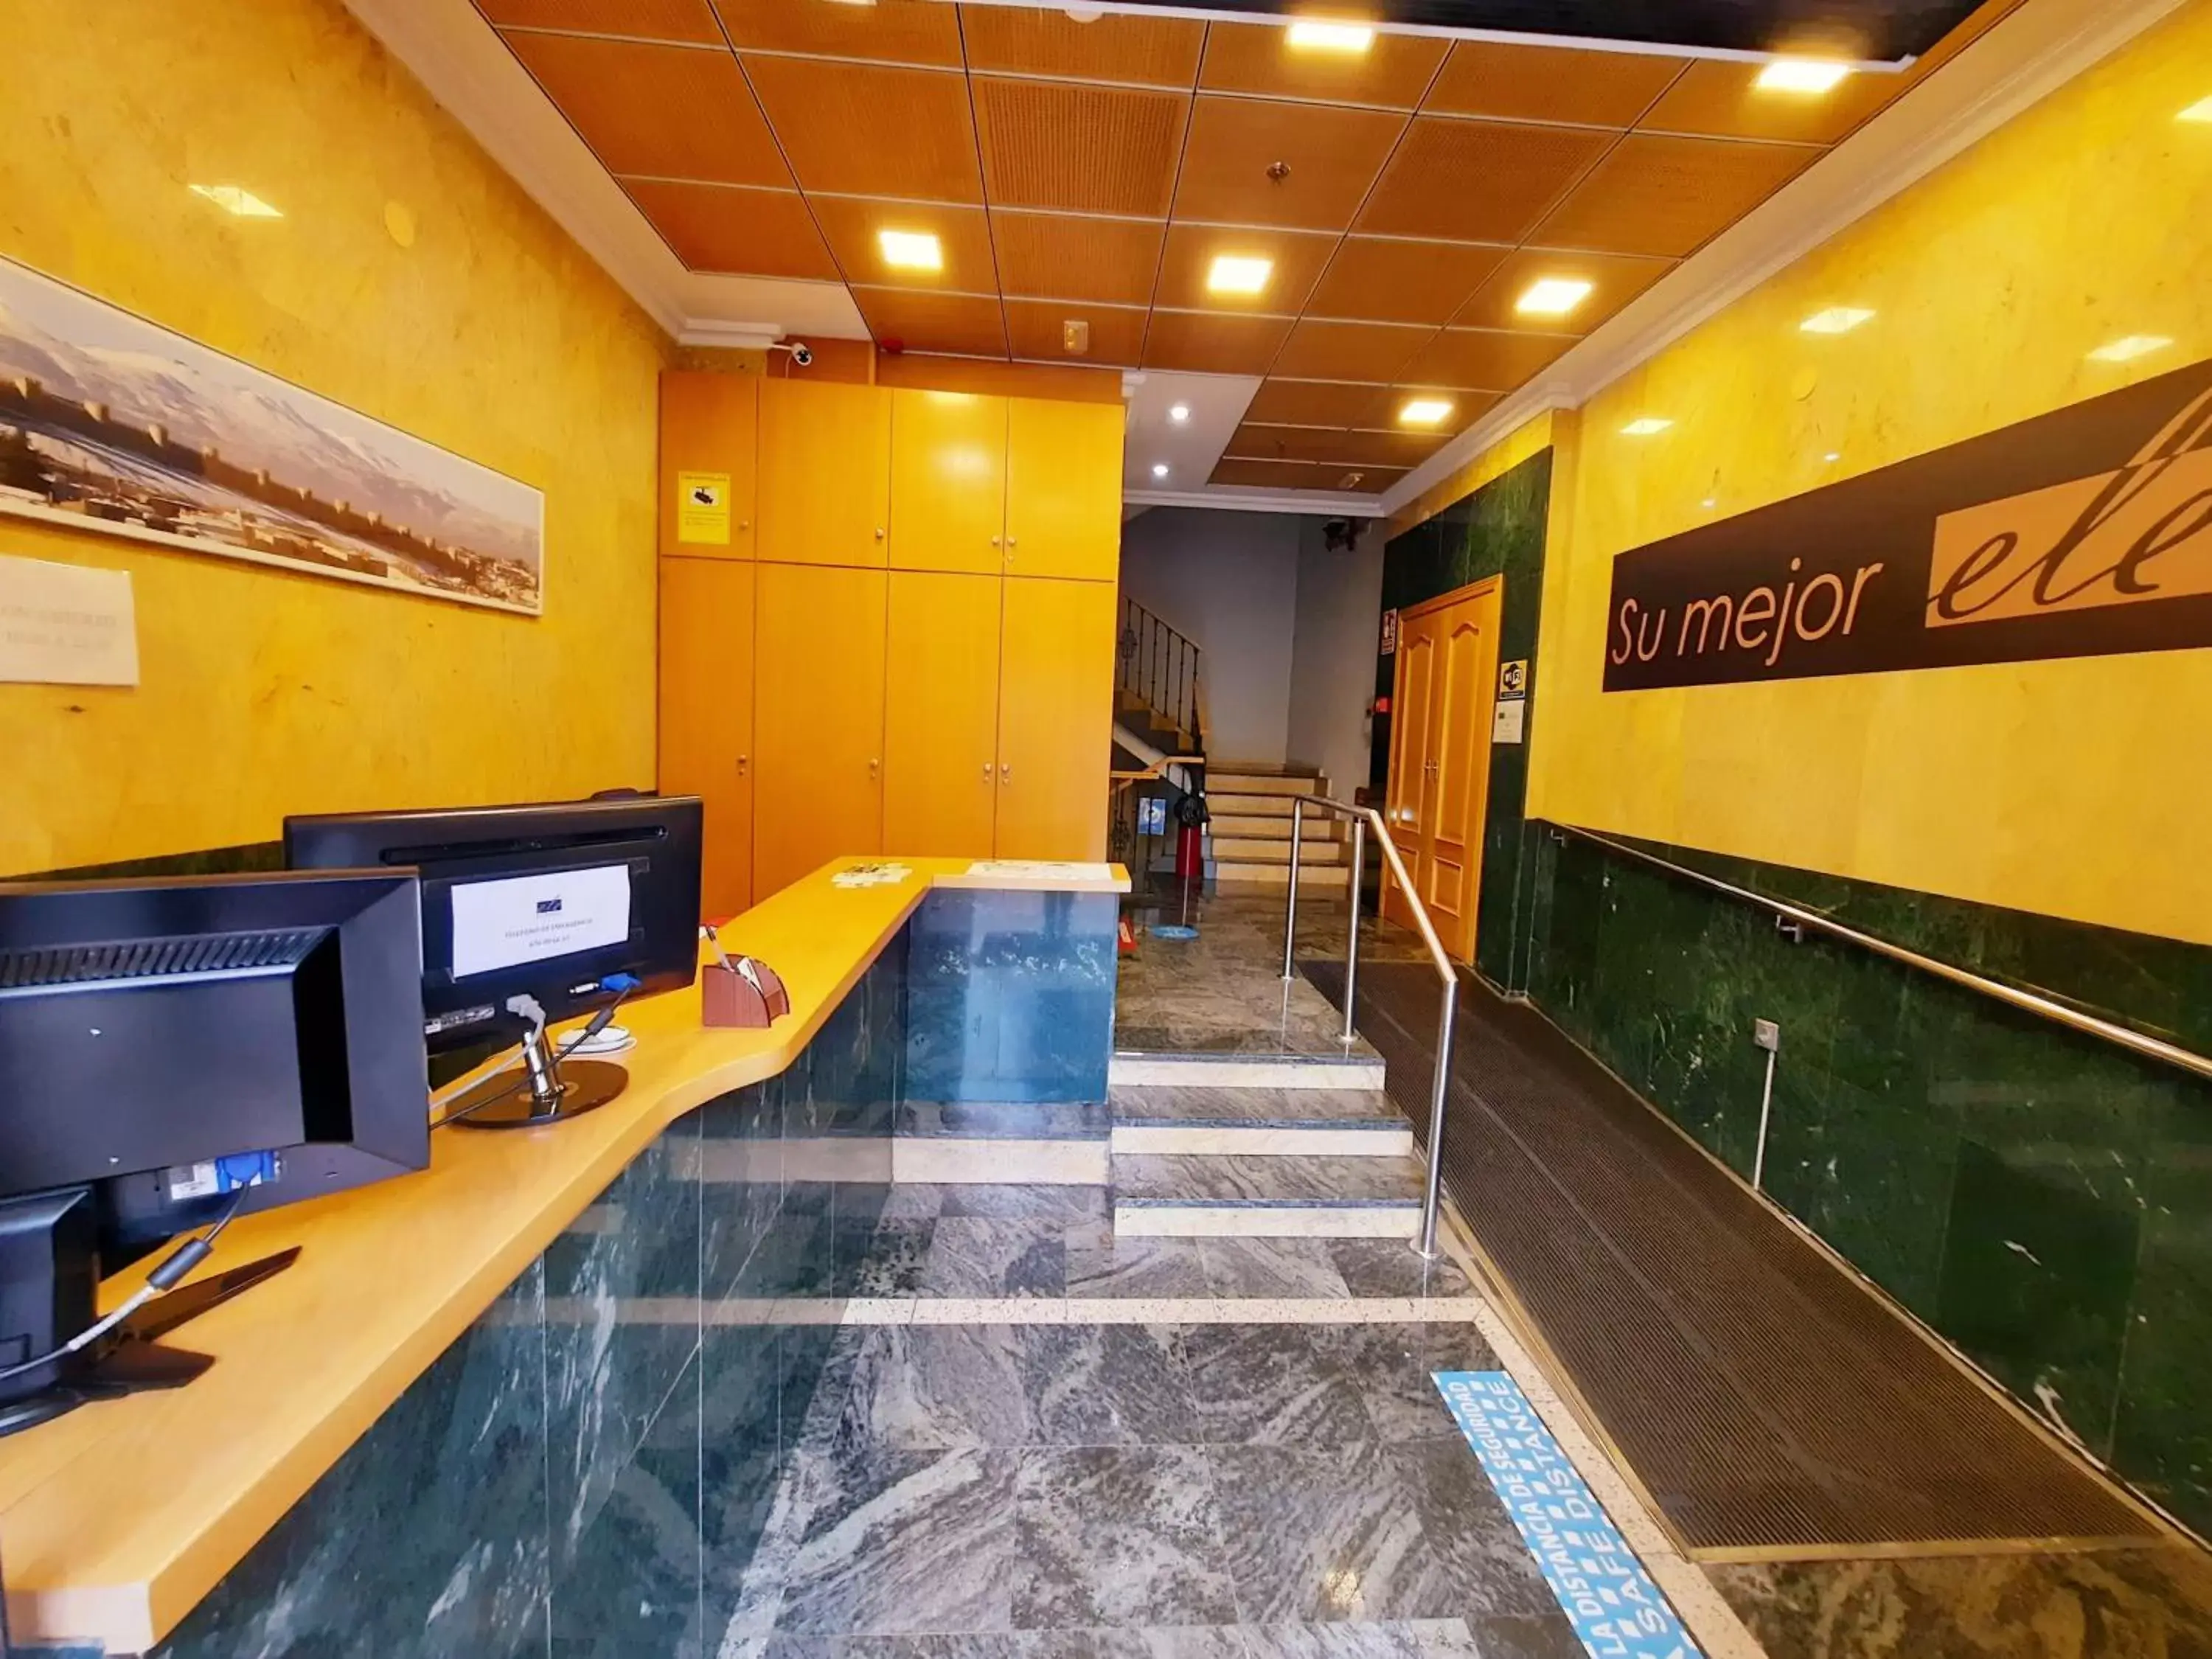 Lobby or reception in Ele Mirador de Santa Ana